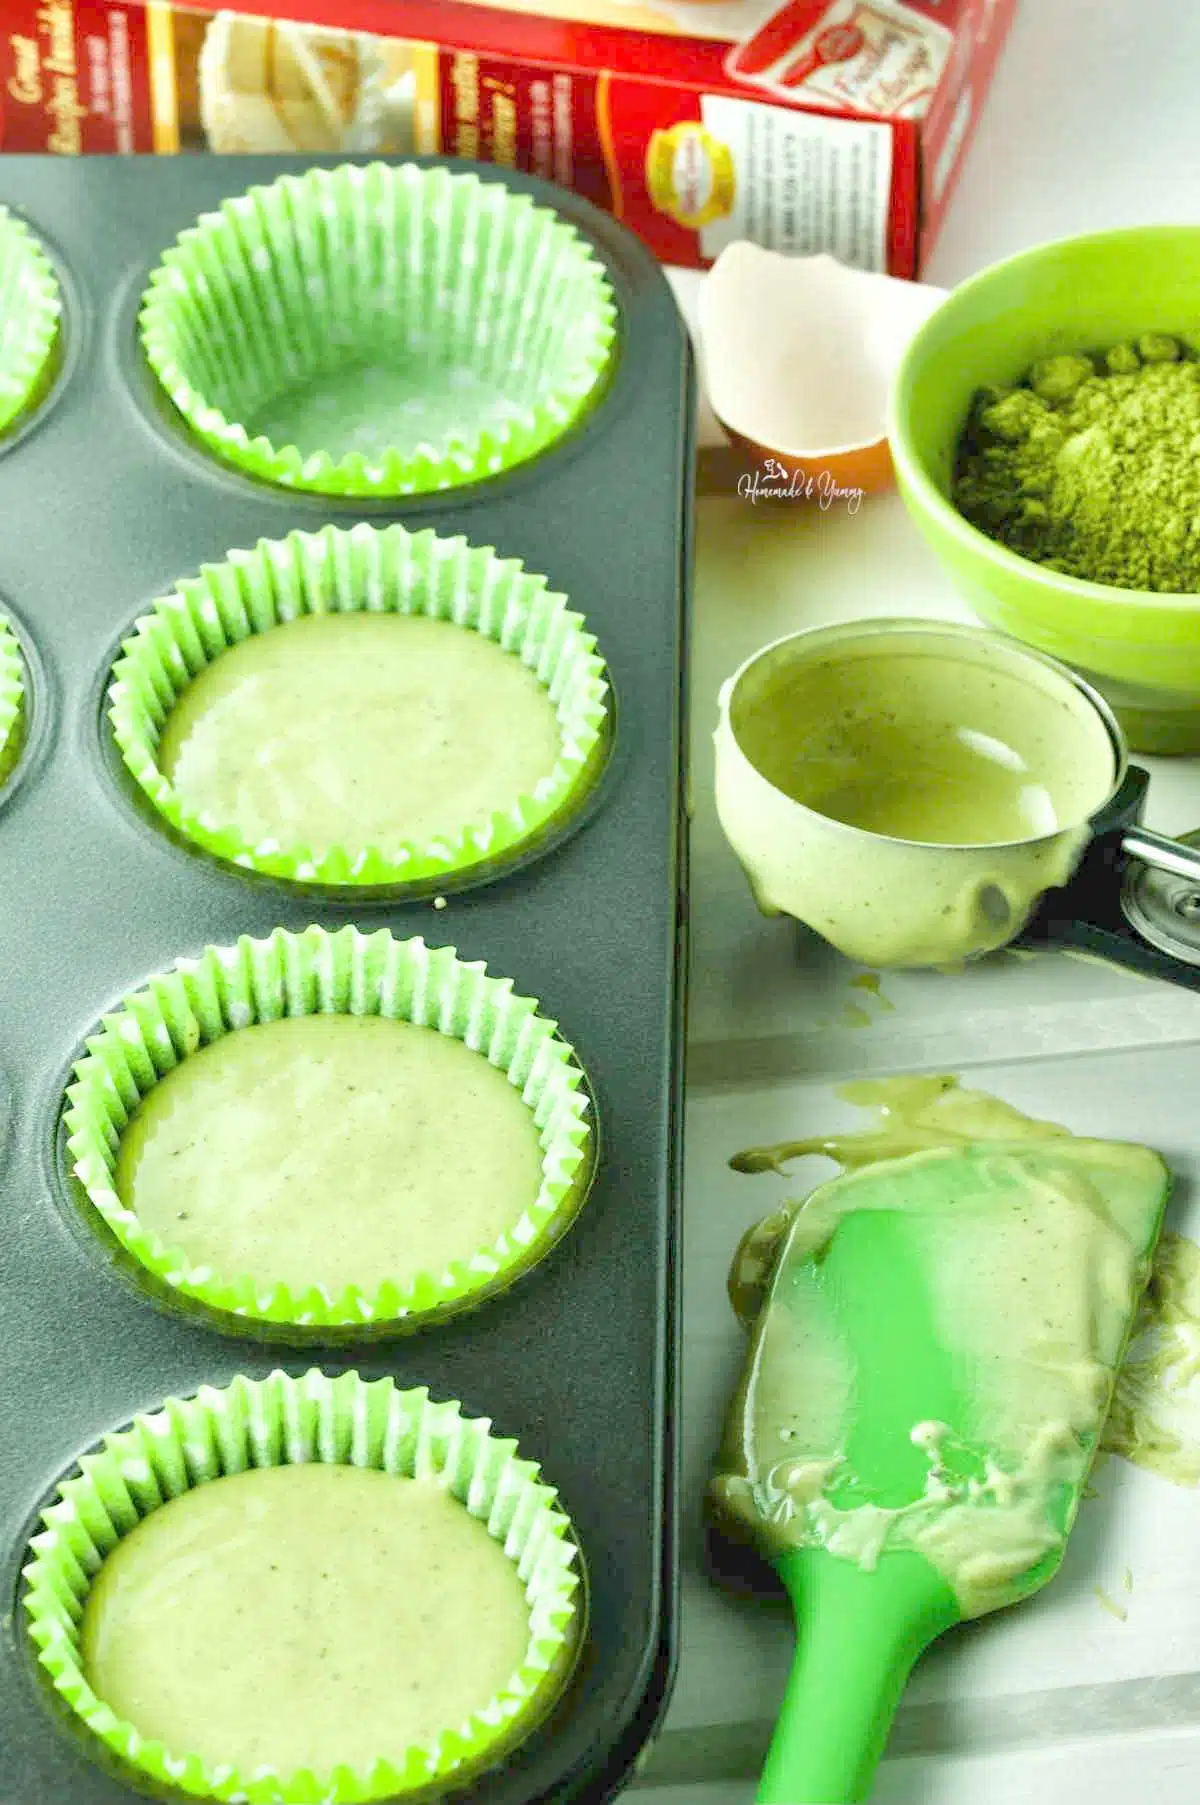 Cupcake batter made with matcha green tea.